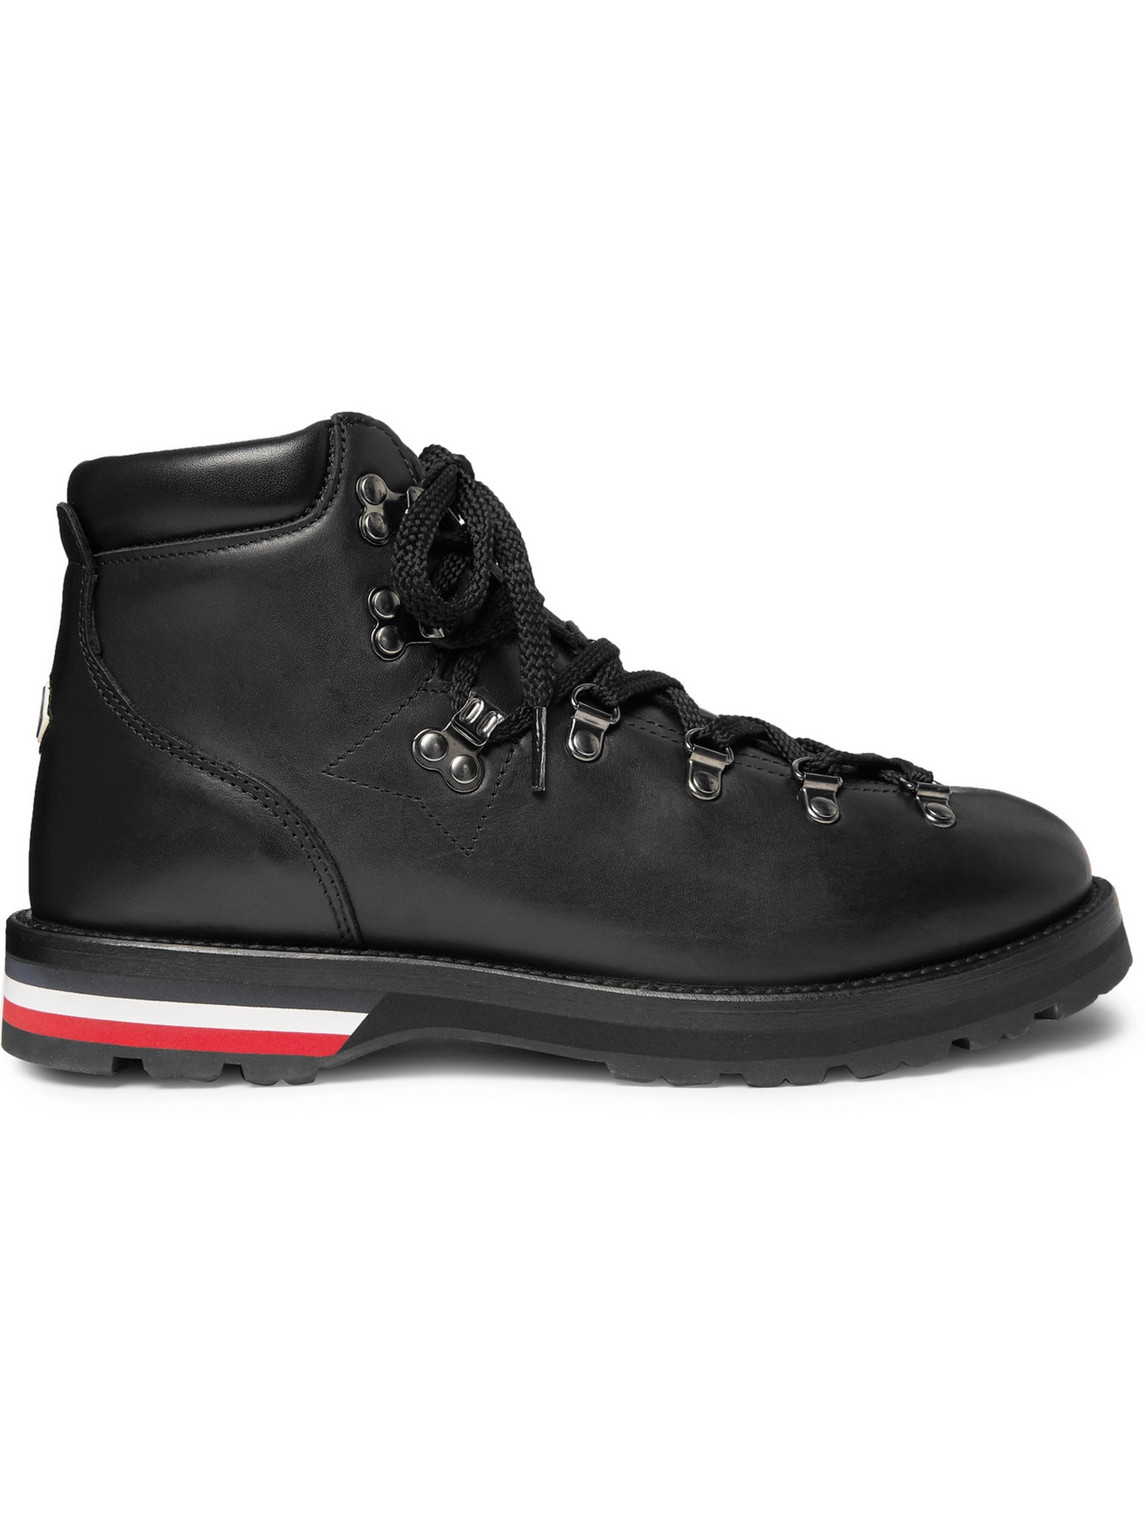 Moncler - Striped Full-Grain Leather Boots - Men - Black - EU 41.5 von Moncler